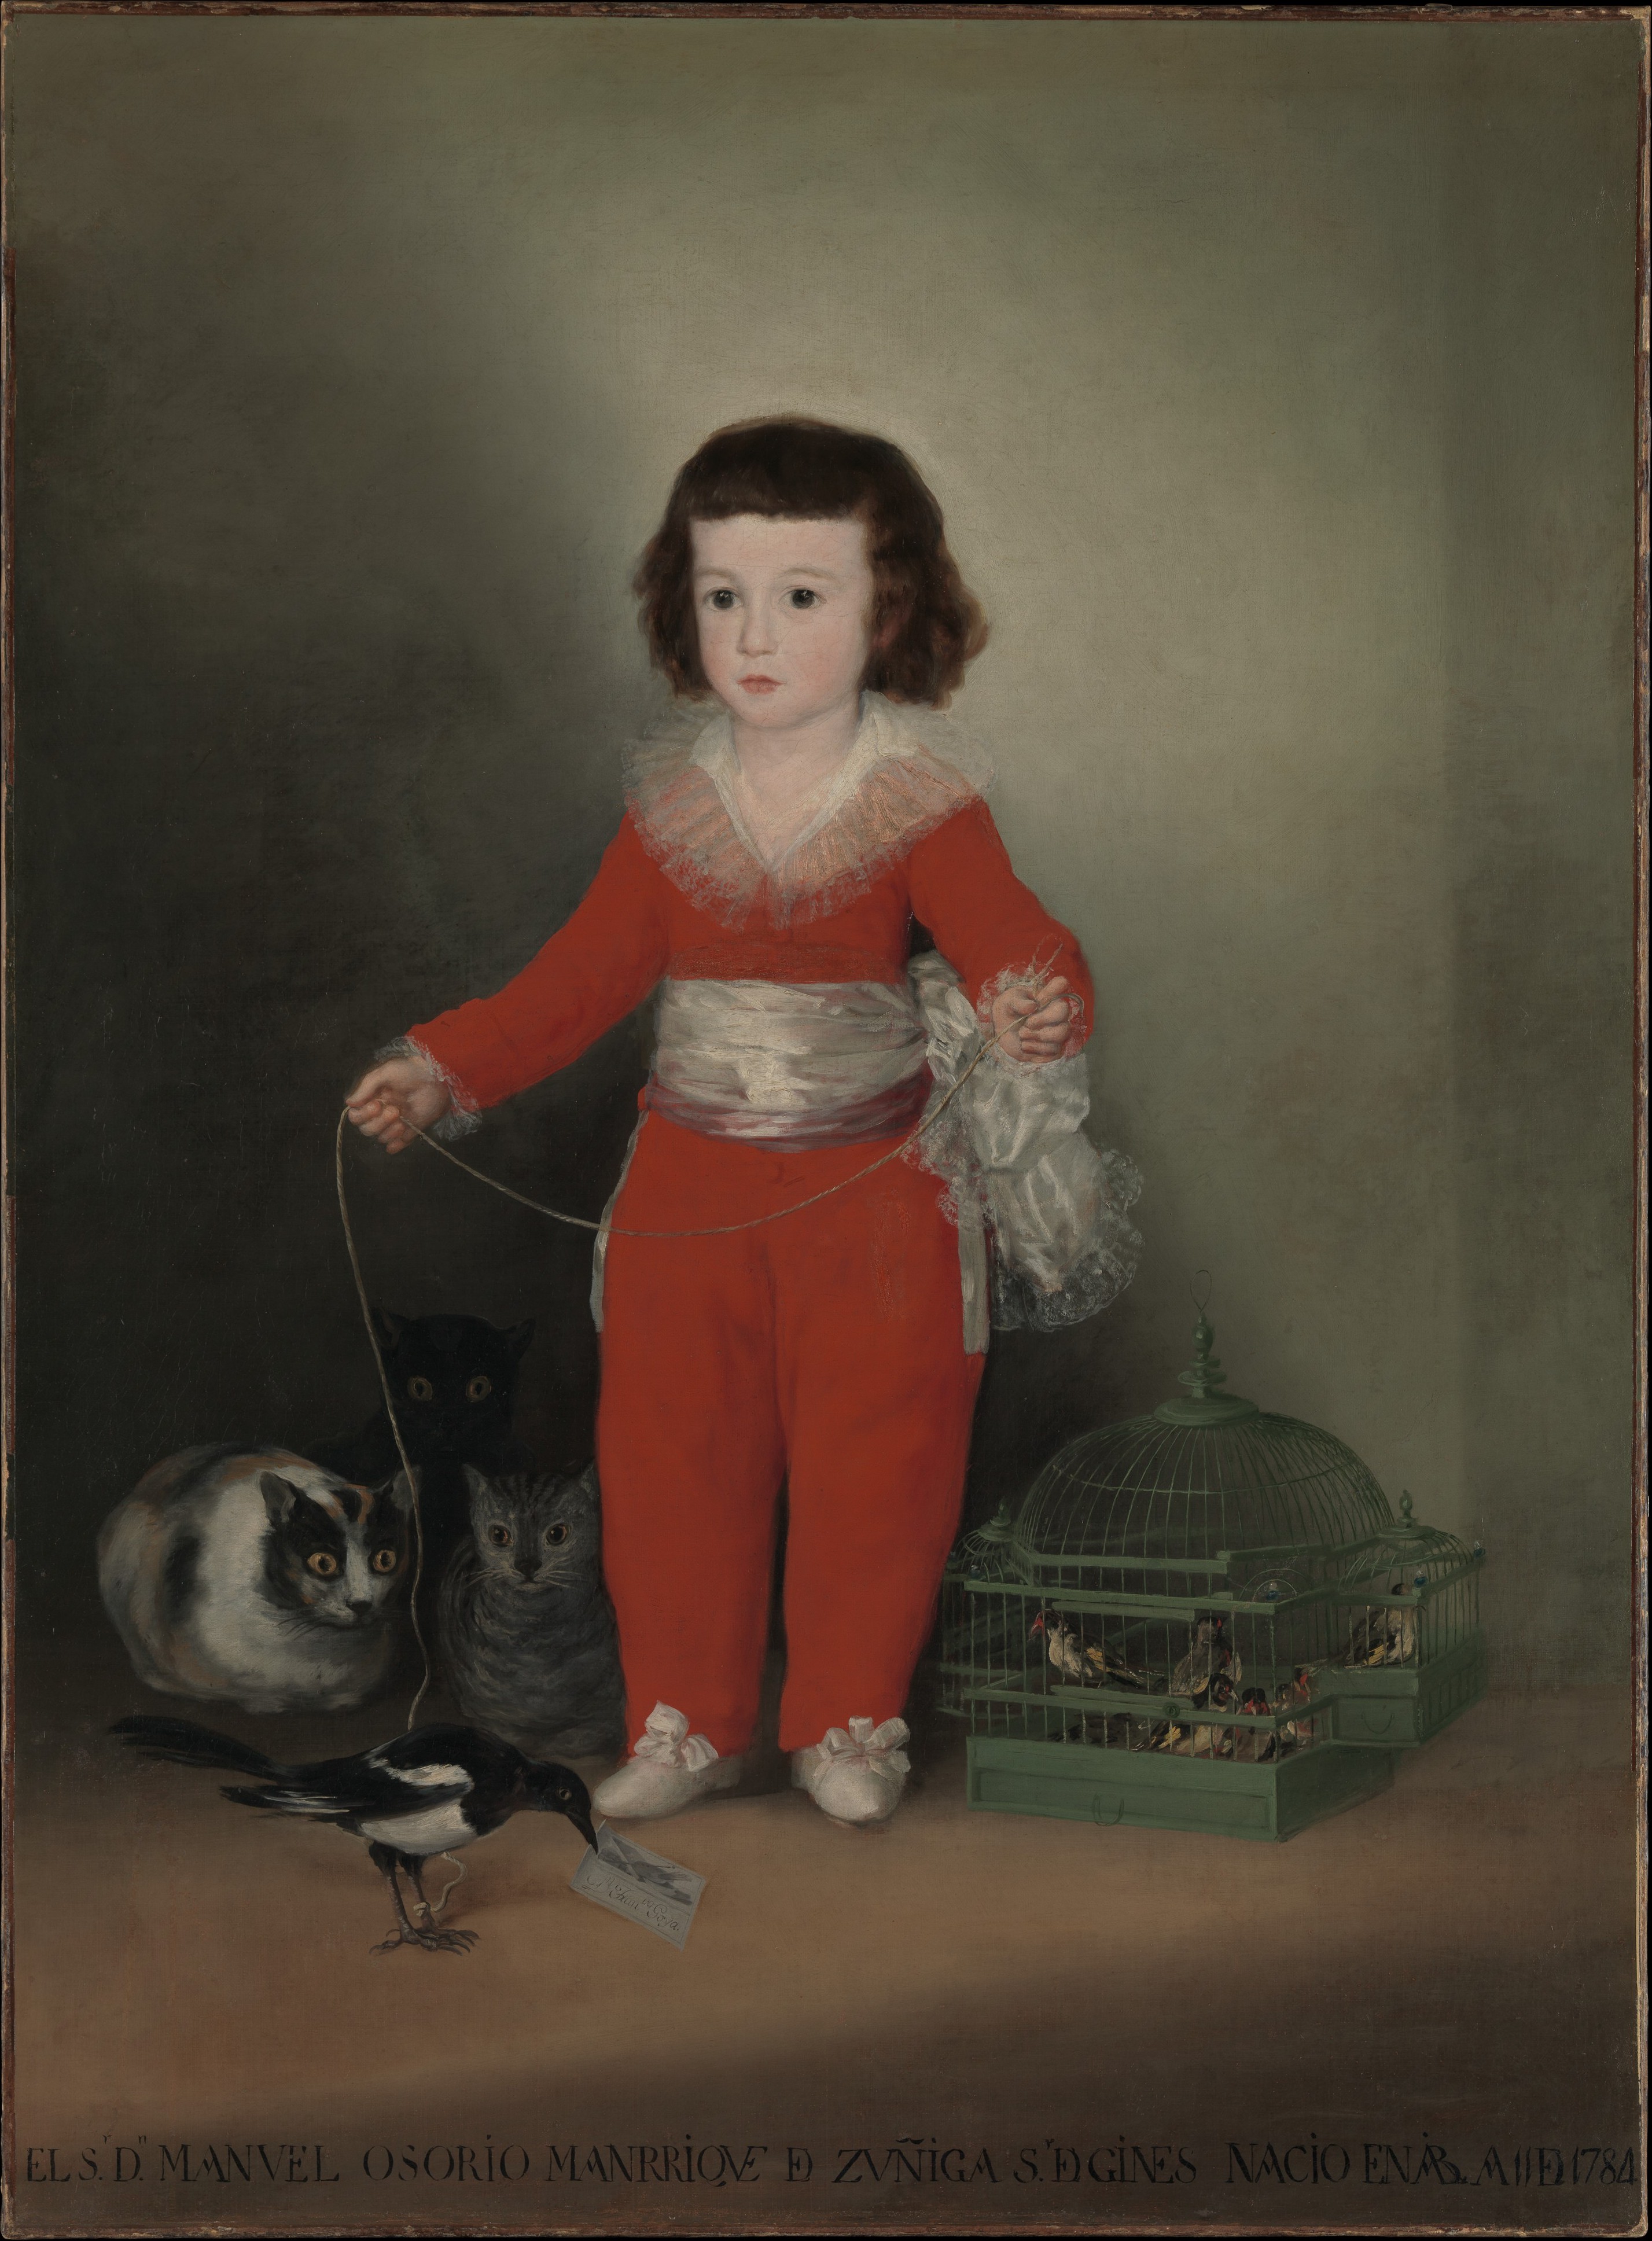 مانويل أوسوريو مانريكي دي زونييغا by Francisco Goya - 1787-1788 م - 127 سم في 101.6 سم 